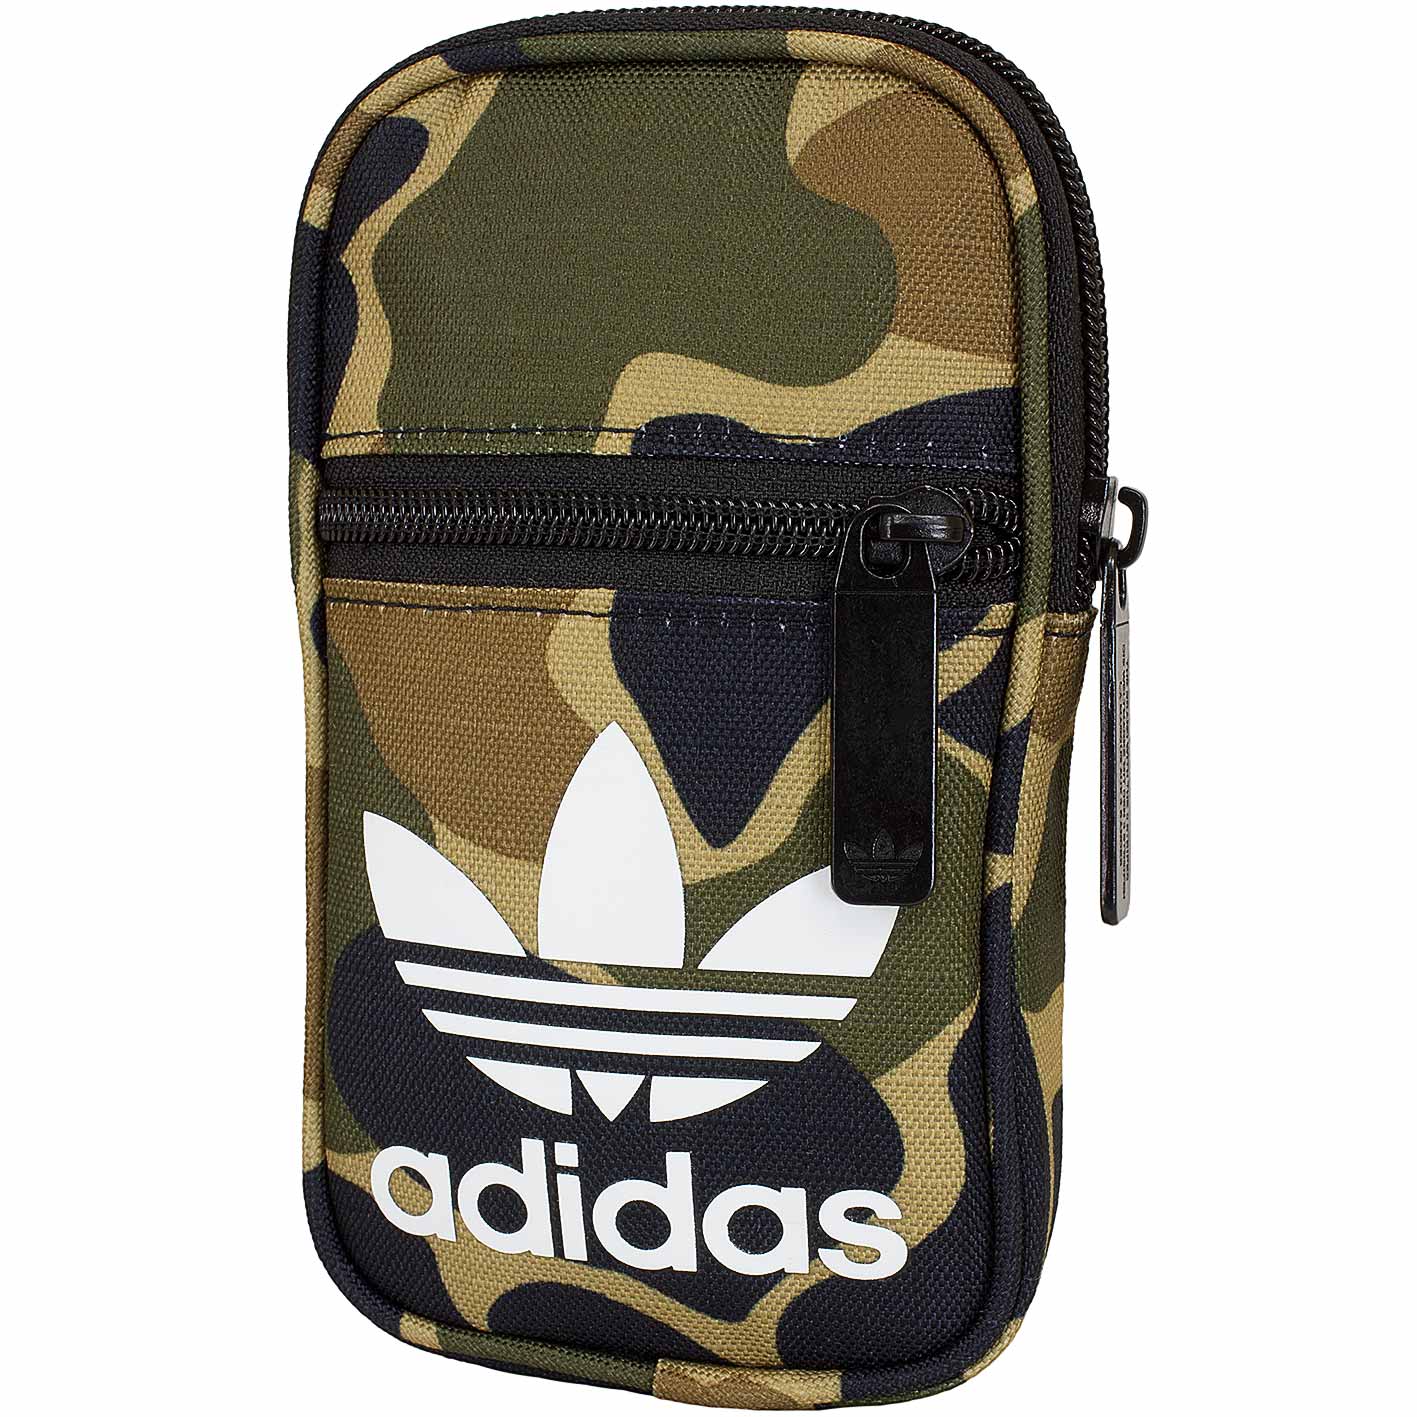 ☆ Adidas Originals Mini Tasche Pouch Camo camouflage - hier bestellen!